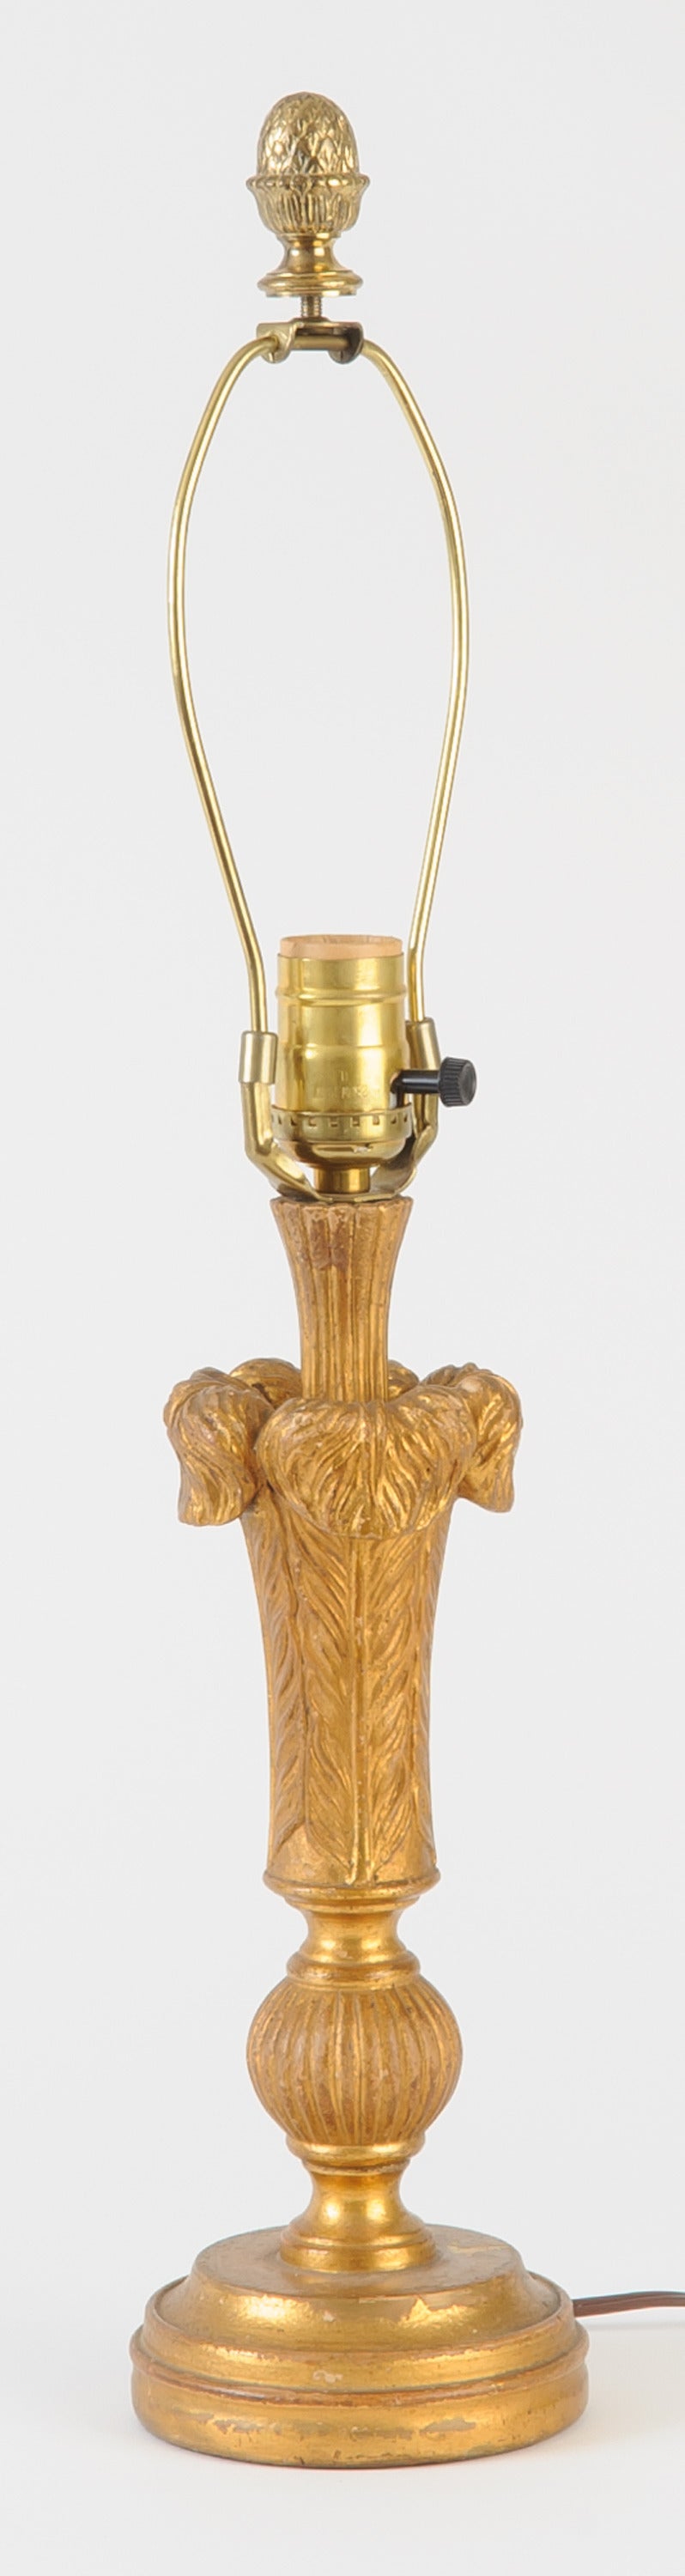 Lampe chandelier Borghèse en bois doré.  L'abat-jour est imprimé à la main avec un motif de feuille de corde.  La firme Borghese a reproduit des objets décoratifs jusqu'en 1940.  L'entreprise était connue pour sa sélection élégante de figurines en